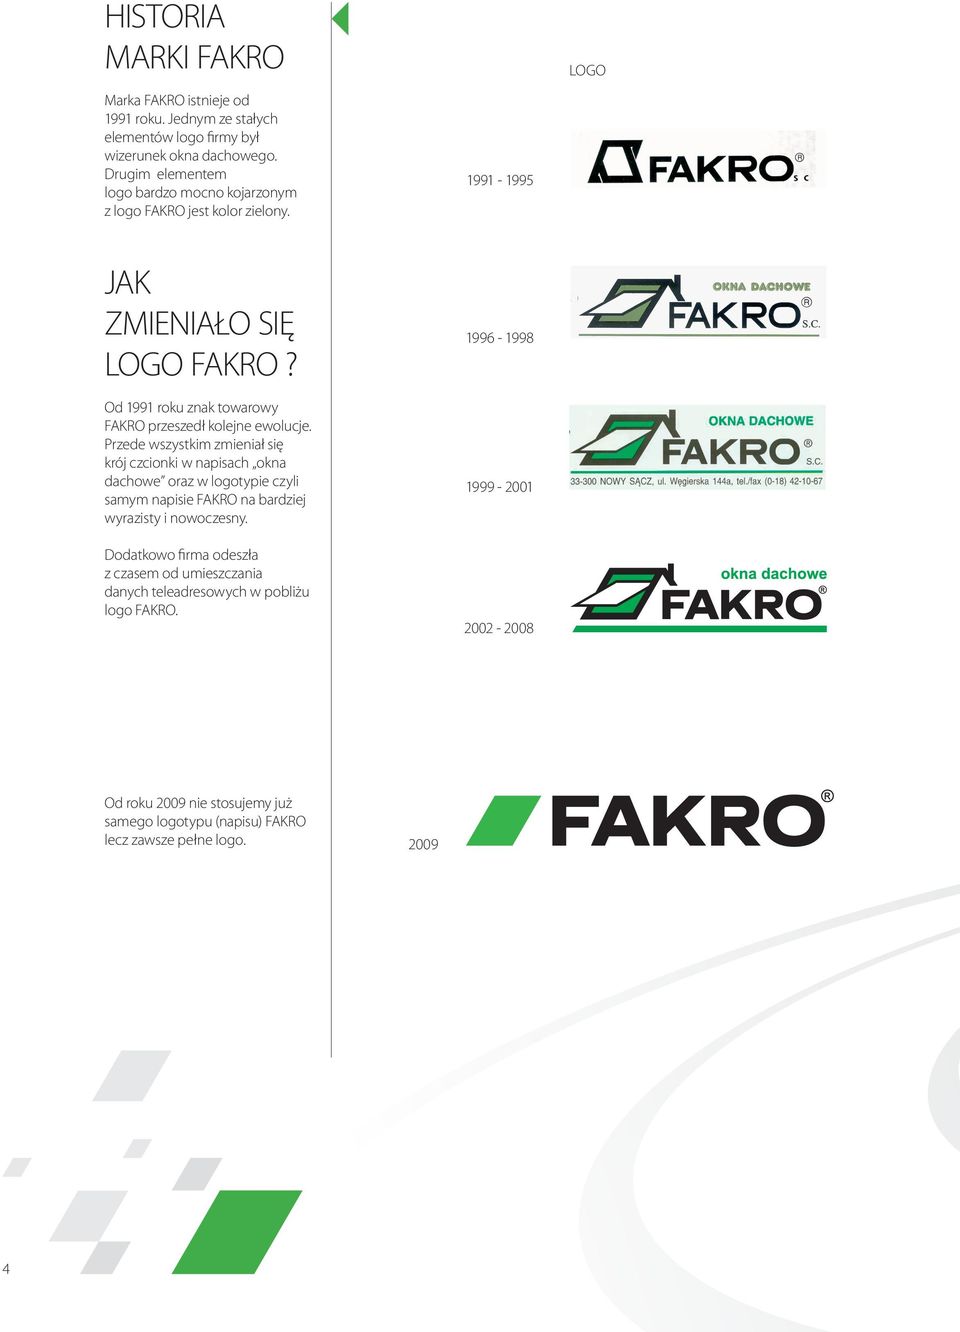 Od 1991 roku znak towarowy FAKRO przeszedł kolejne ewolucje.